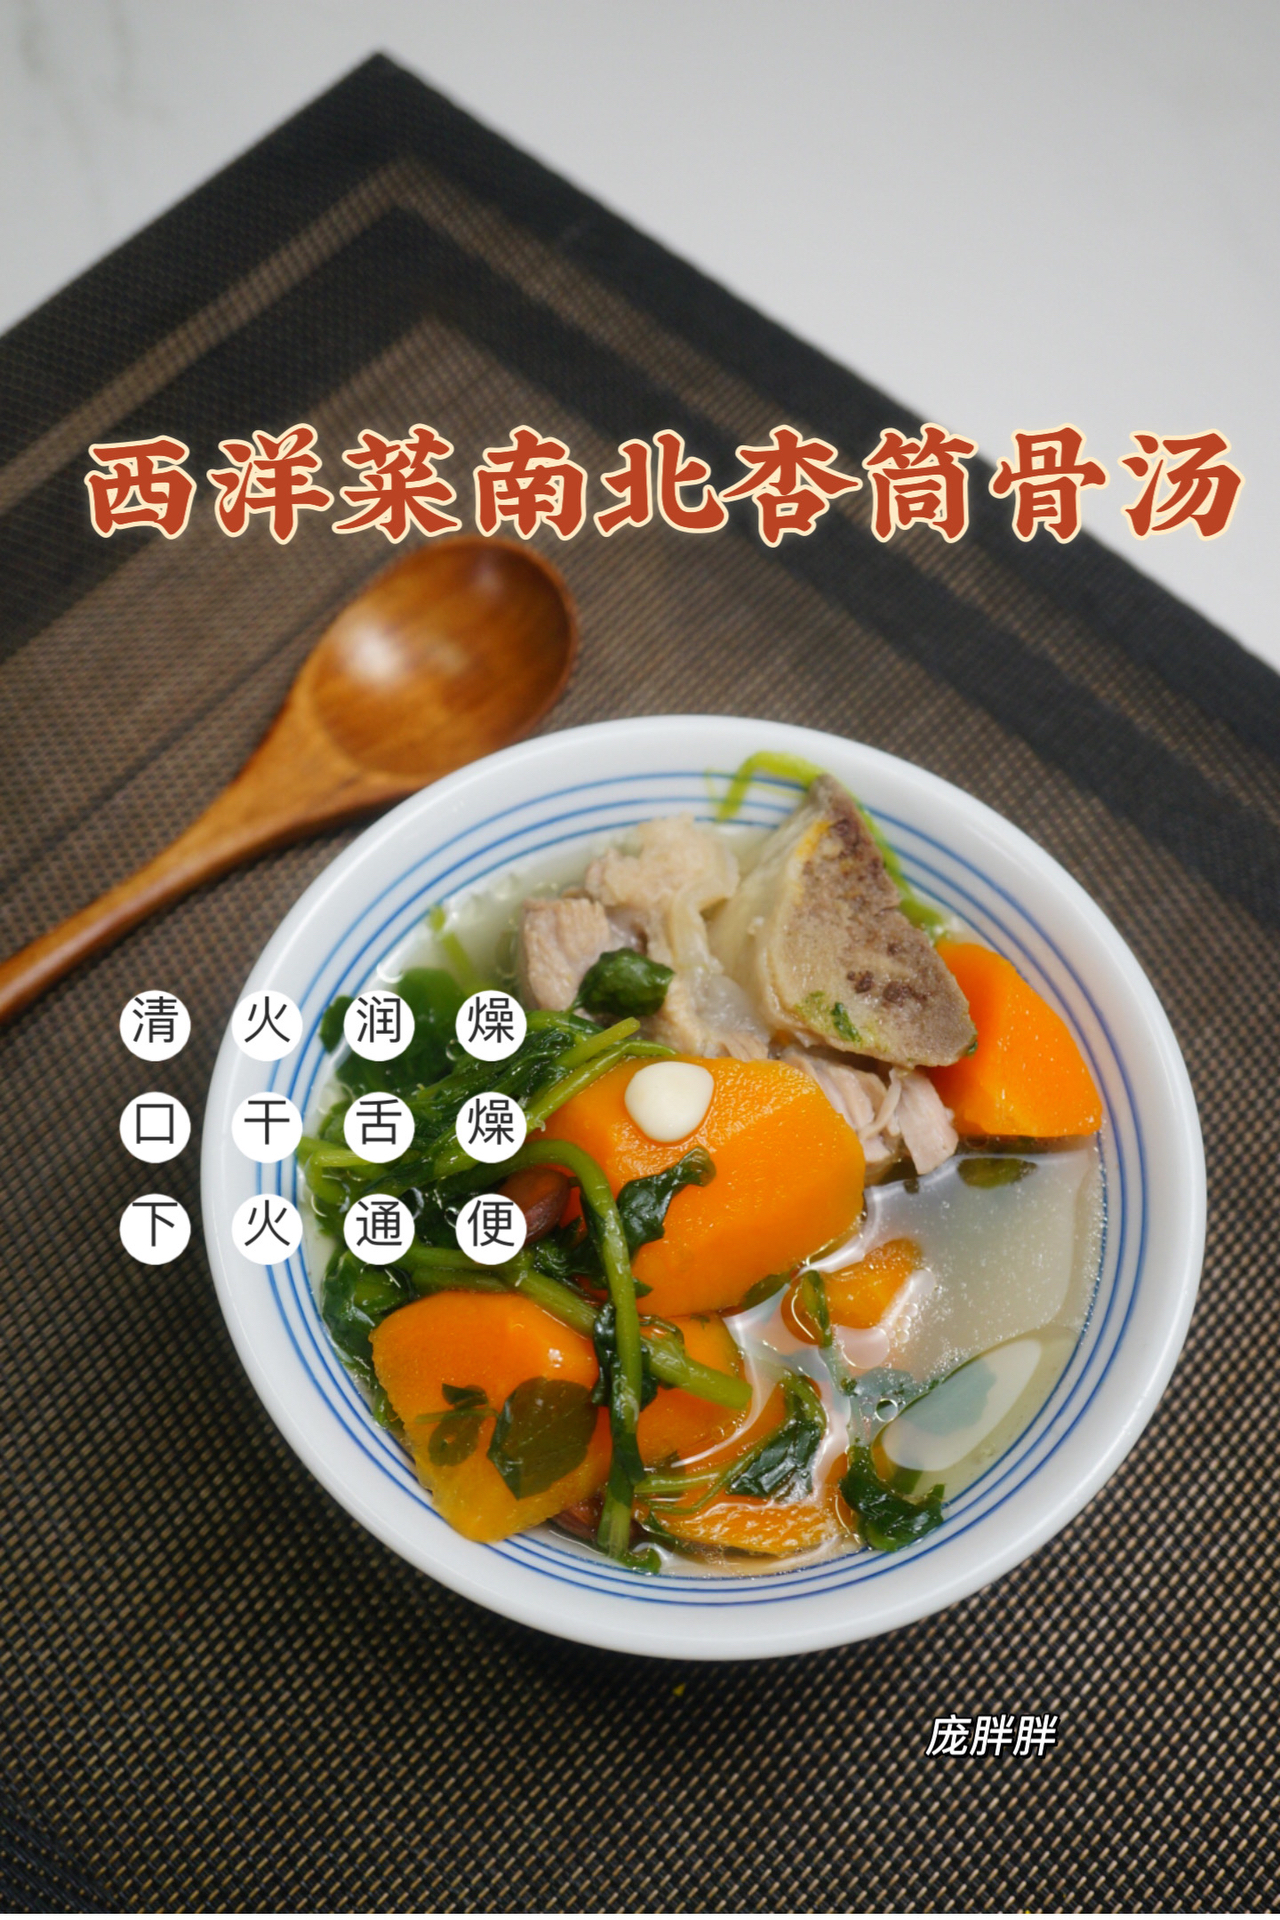 广东靓汤 清热下火润燥西洋菜南北杏筒骨汤的做法